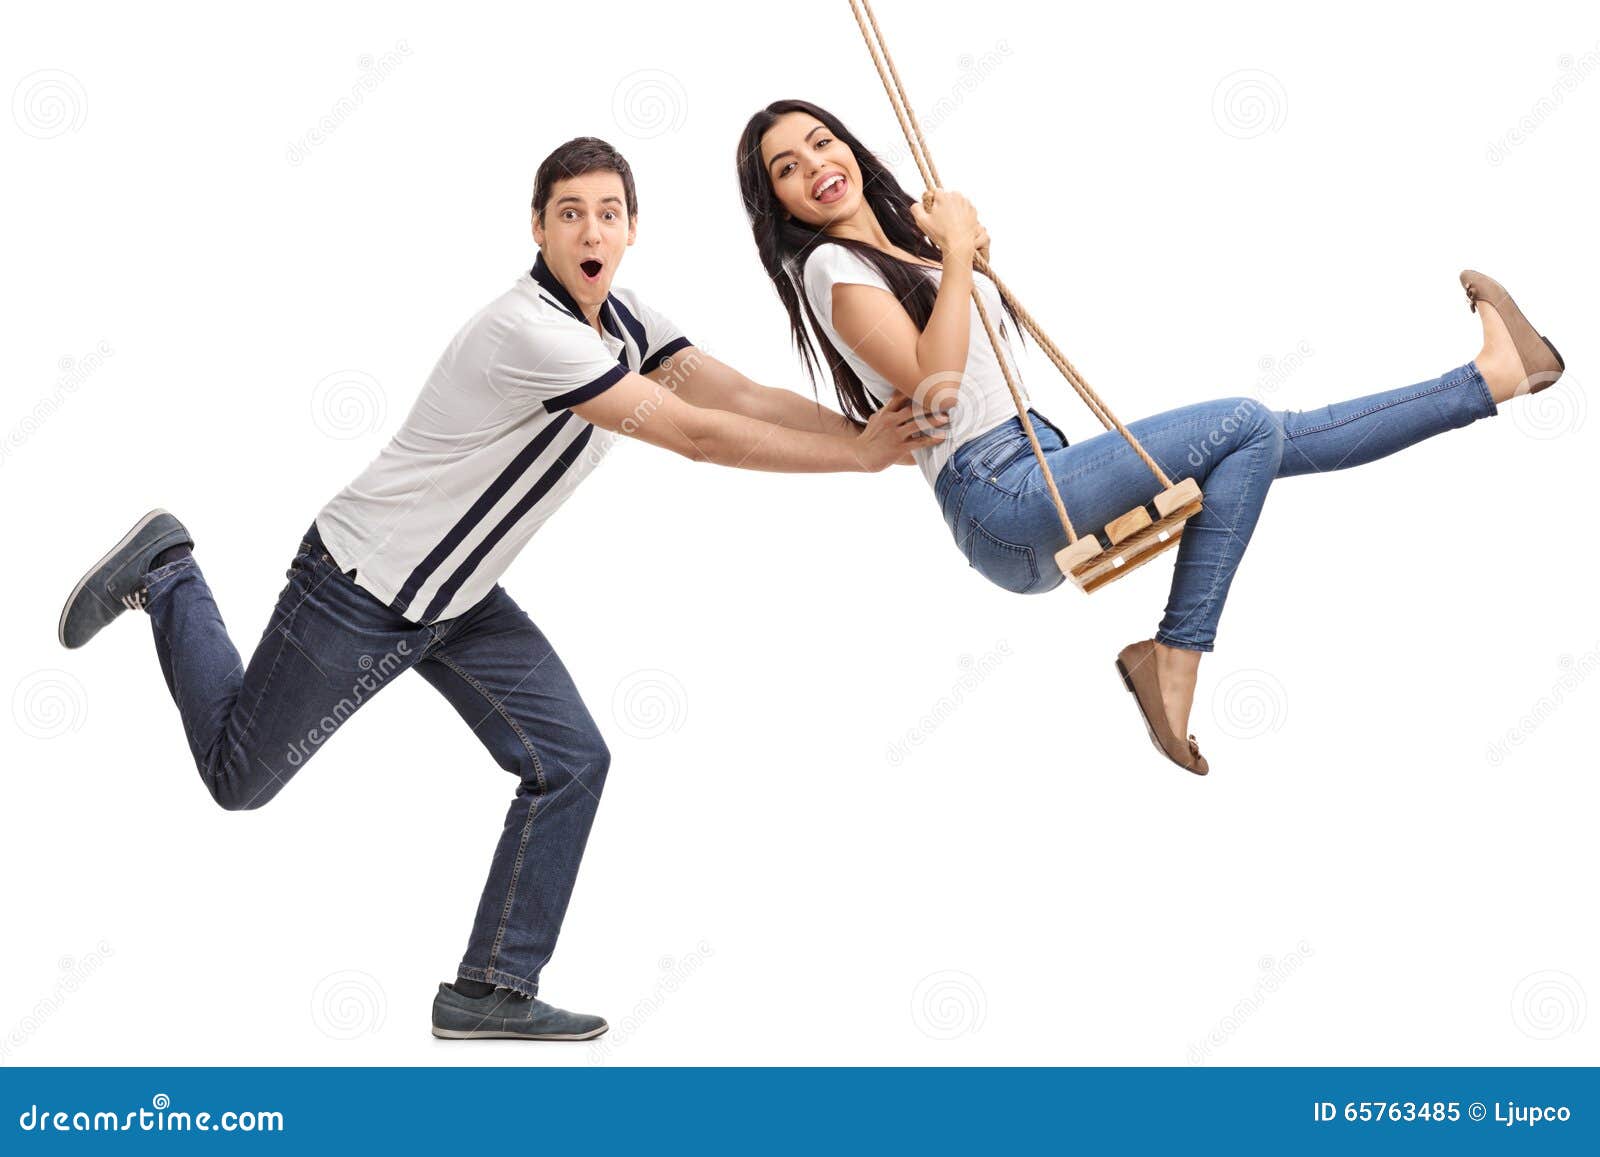 my girlfriend wants to swing